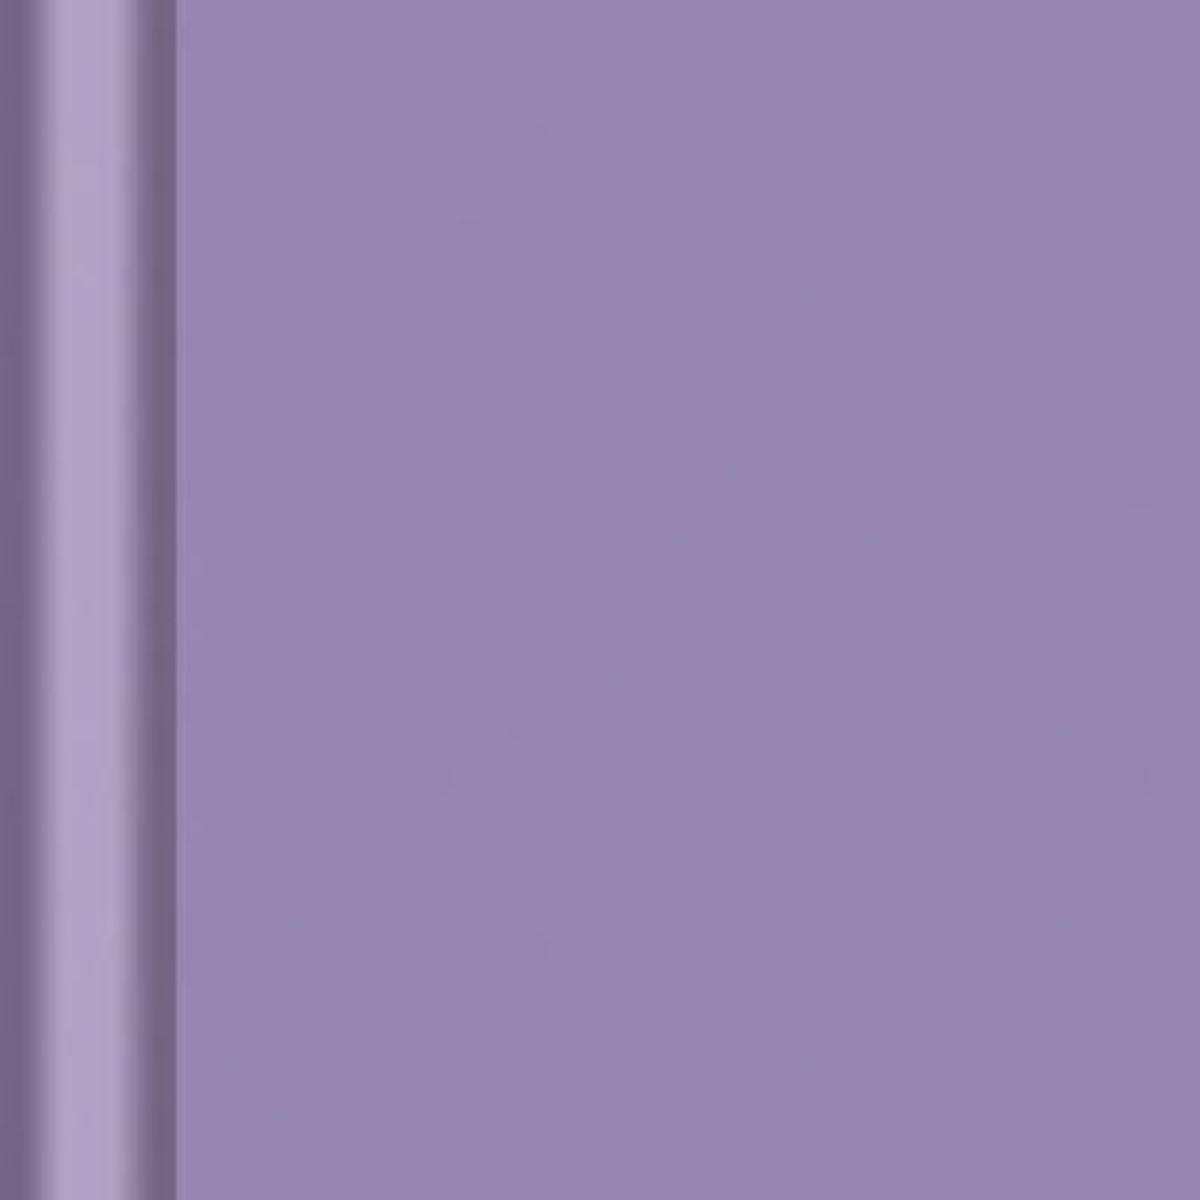 Nappe en rouleau damassé amethyste - 6 x 1,18 m - Papier damassé - Violet